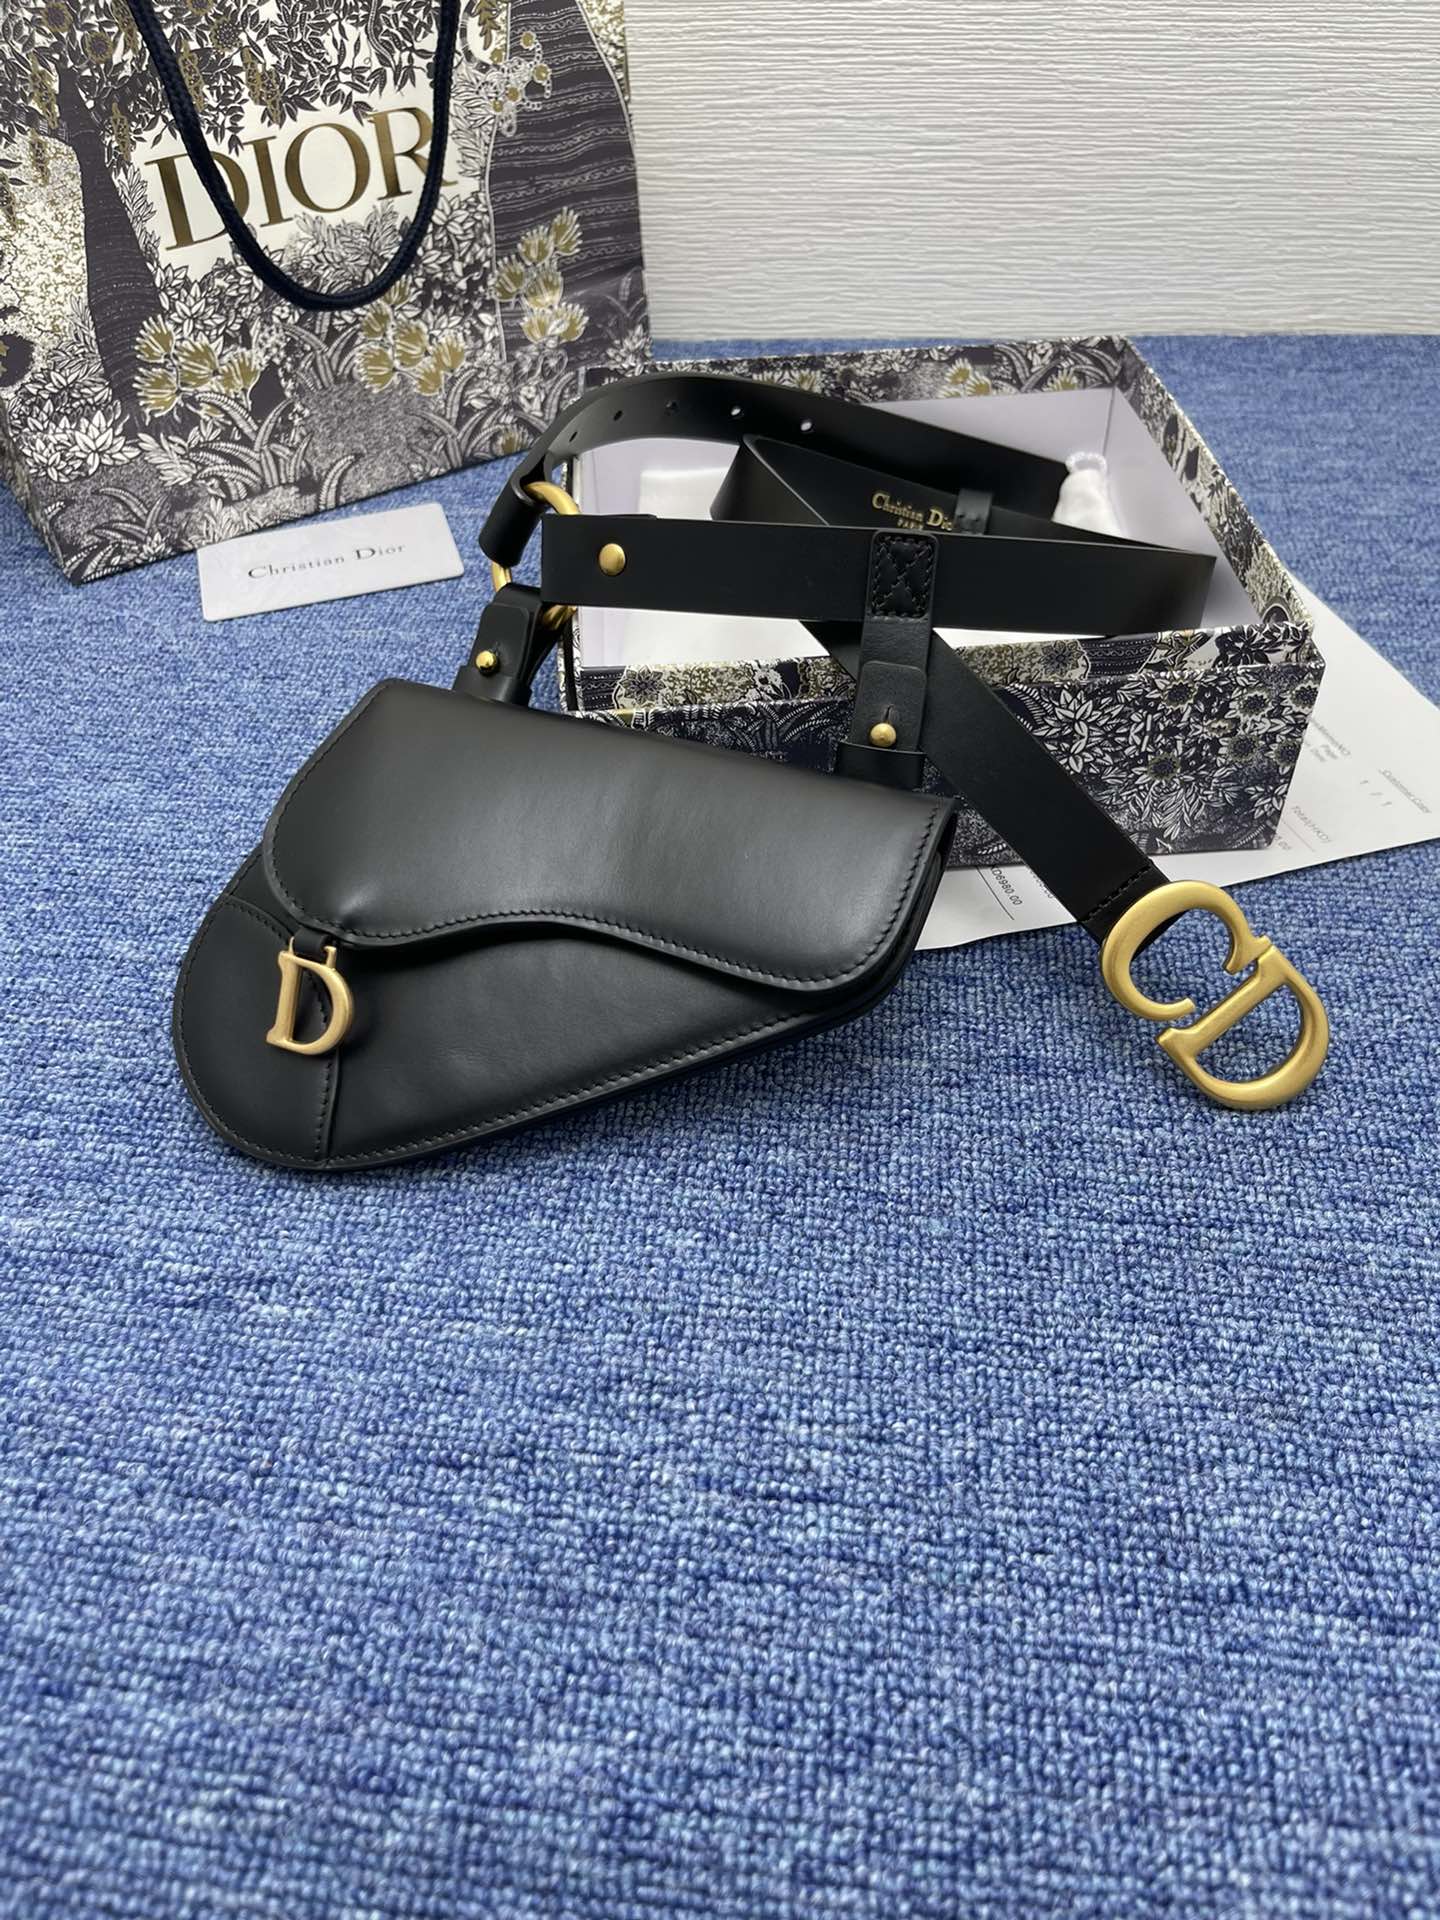 迪奥5502.0cm这款30MontaigneAvenue腰带从同名手袋汲取灵感采用黑色光滑牛皮革精心制